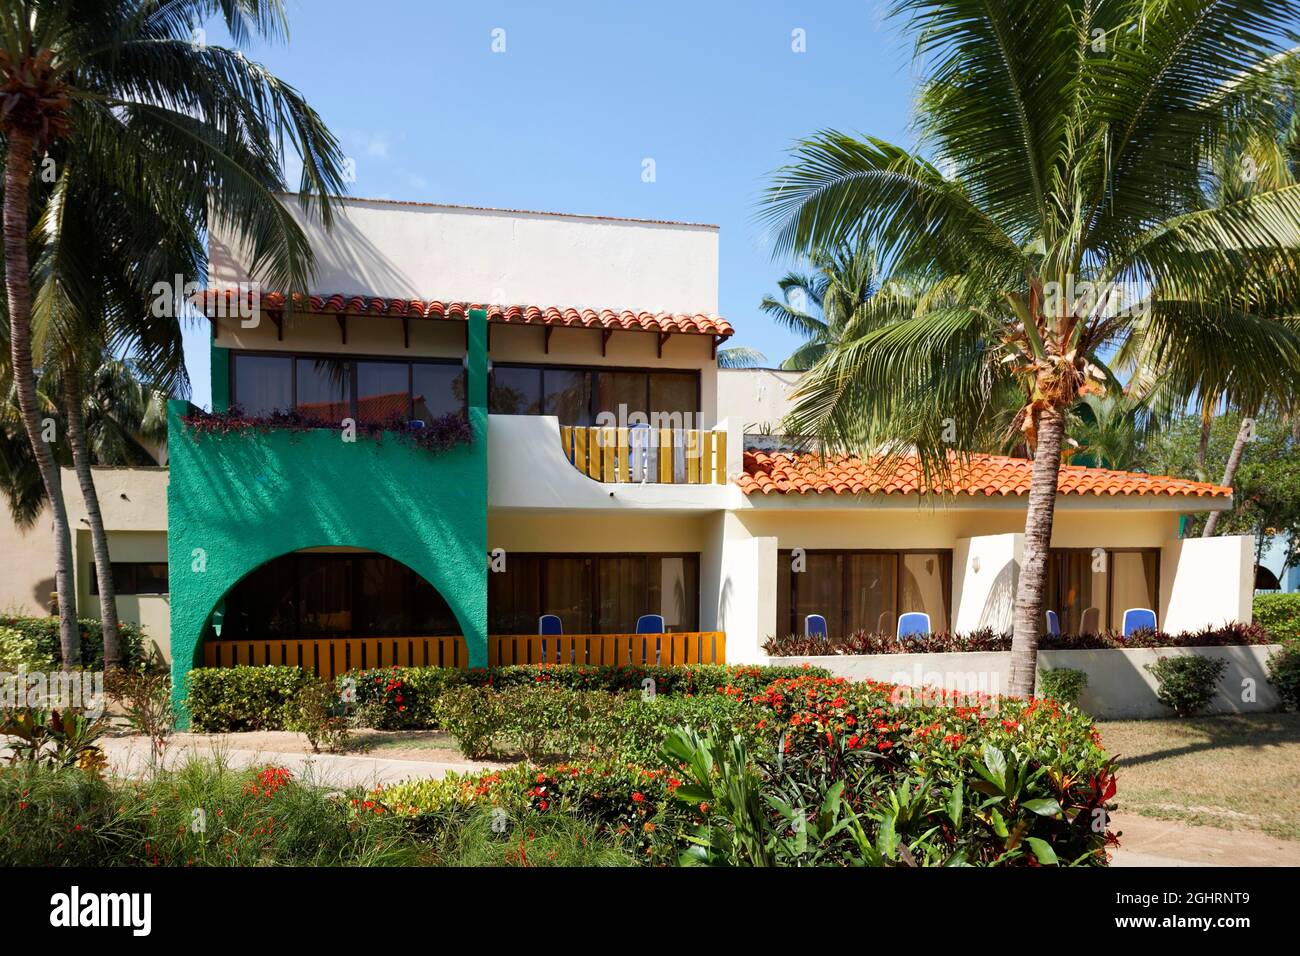 Bungalow, jardin, Coconut Palm (Cocos nucifera), Hotel Brisas, Playa St. Lucia, province de Camagueey, Caraïbes, Cuba Banque D'Images